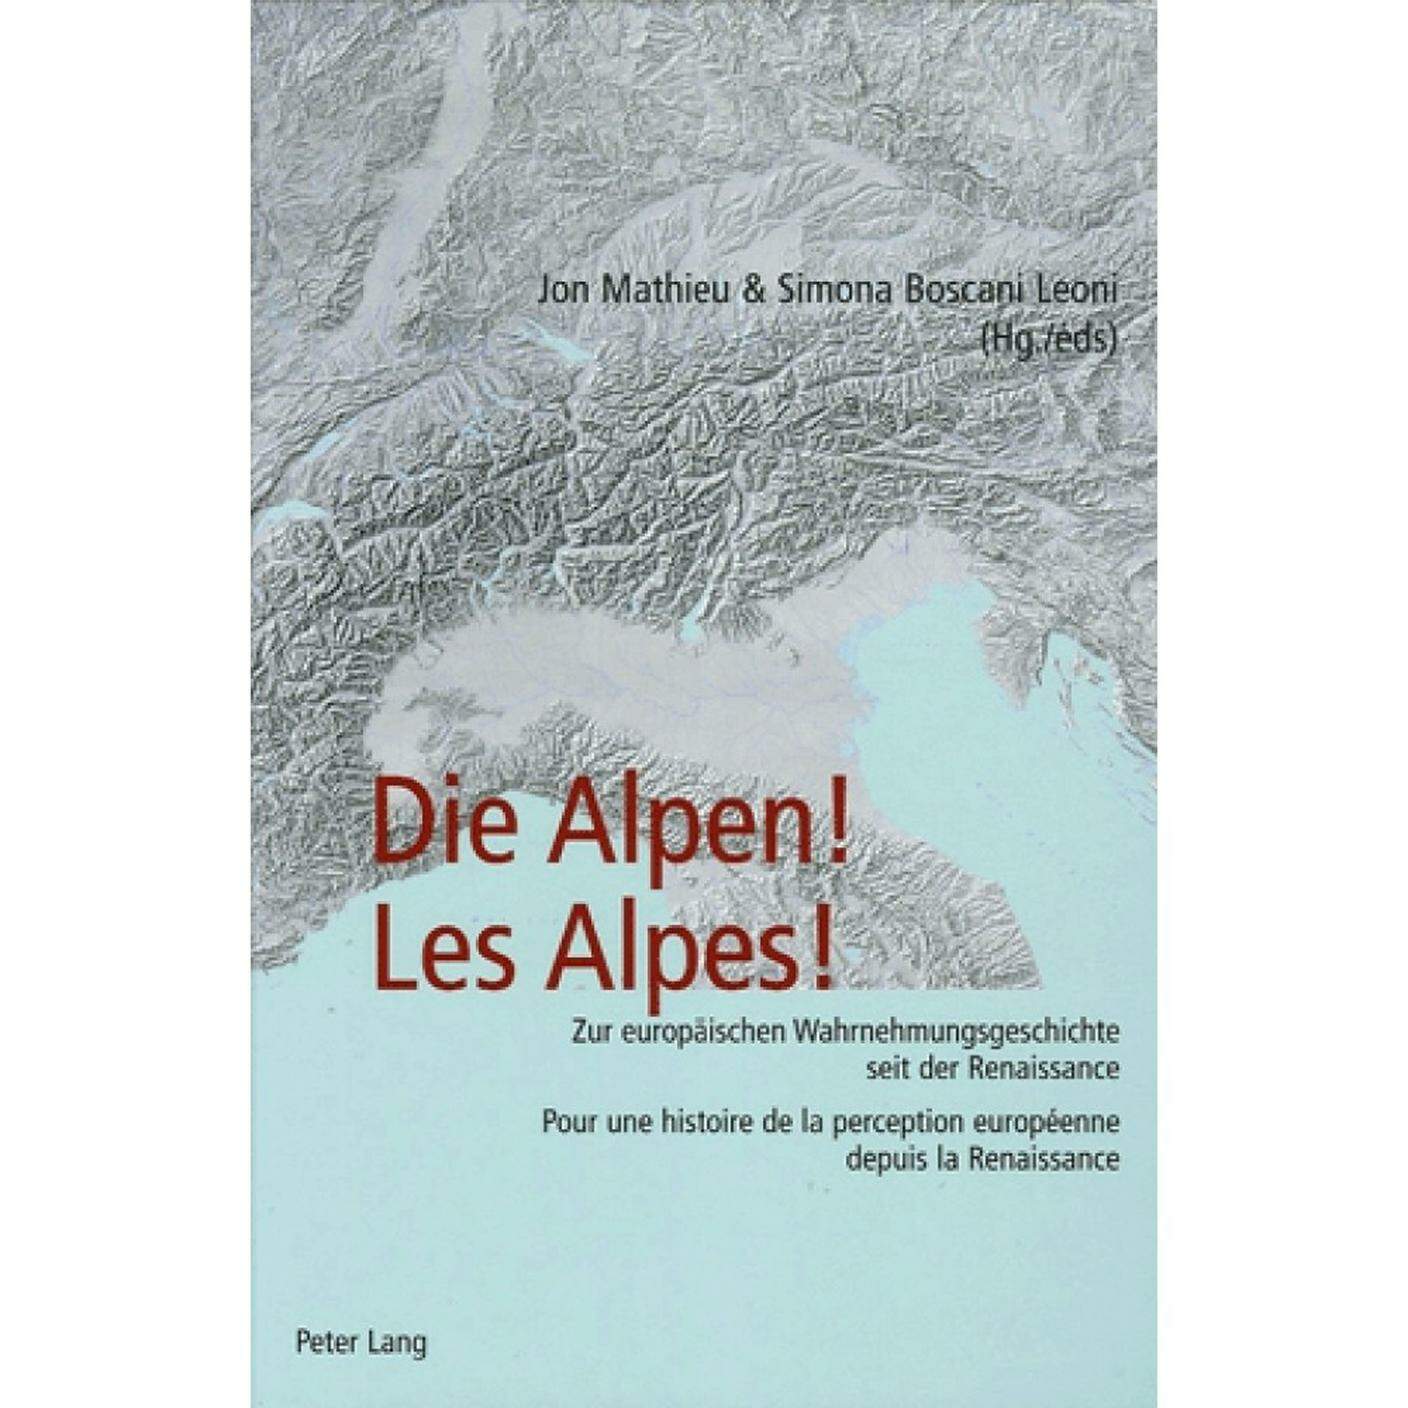 "Les Alpes! Pour une histoire de la perception européenne depuis la Renaissance" di Jon Mathieu & Simona Boscani Leoni (dettaglio copertina)